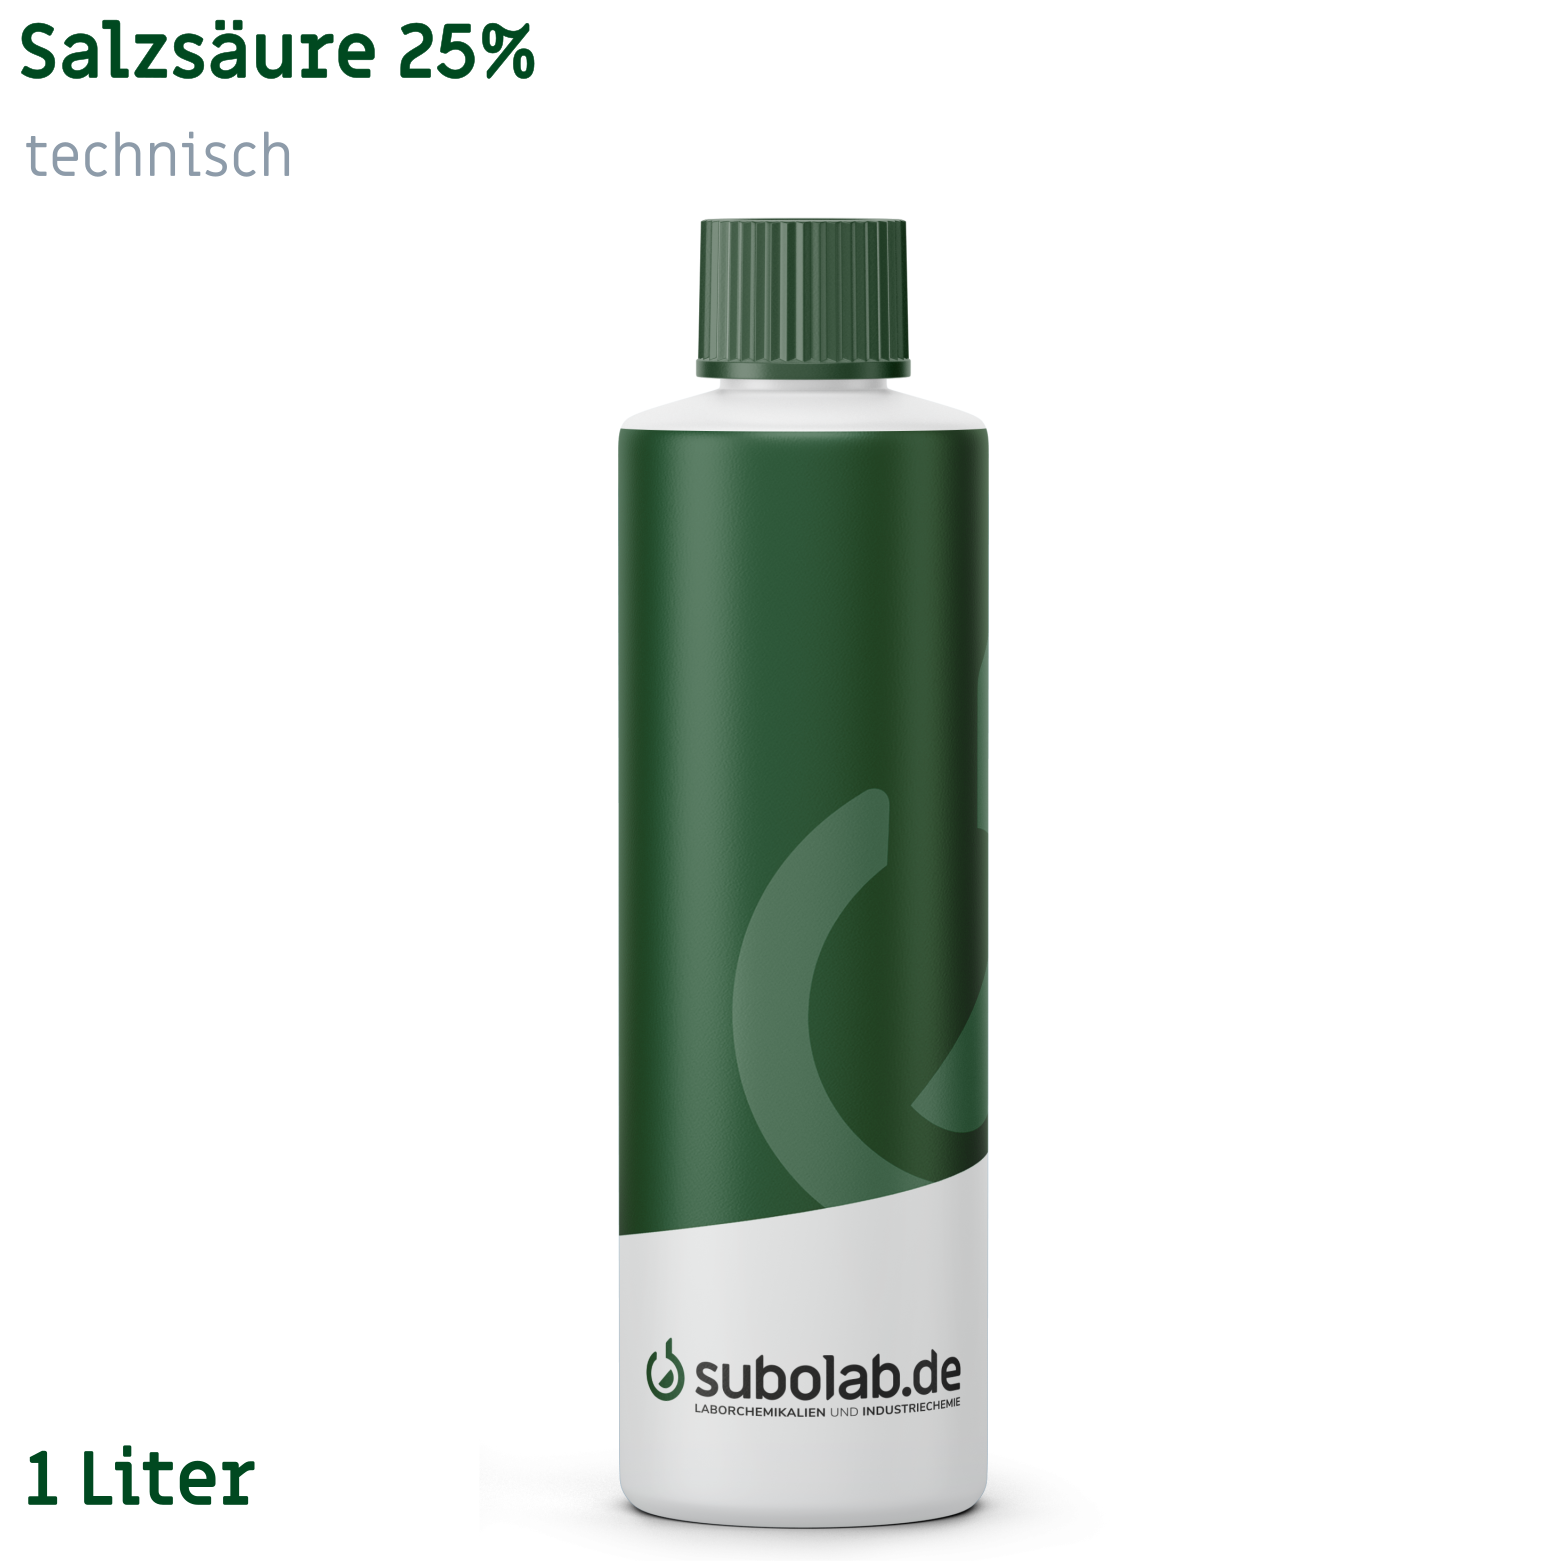 Bild von Salzsäure 25% technisch (1 Liter)